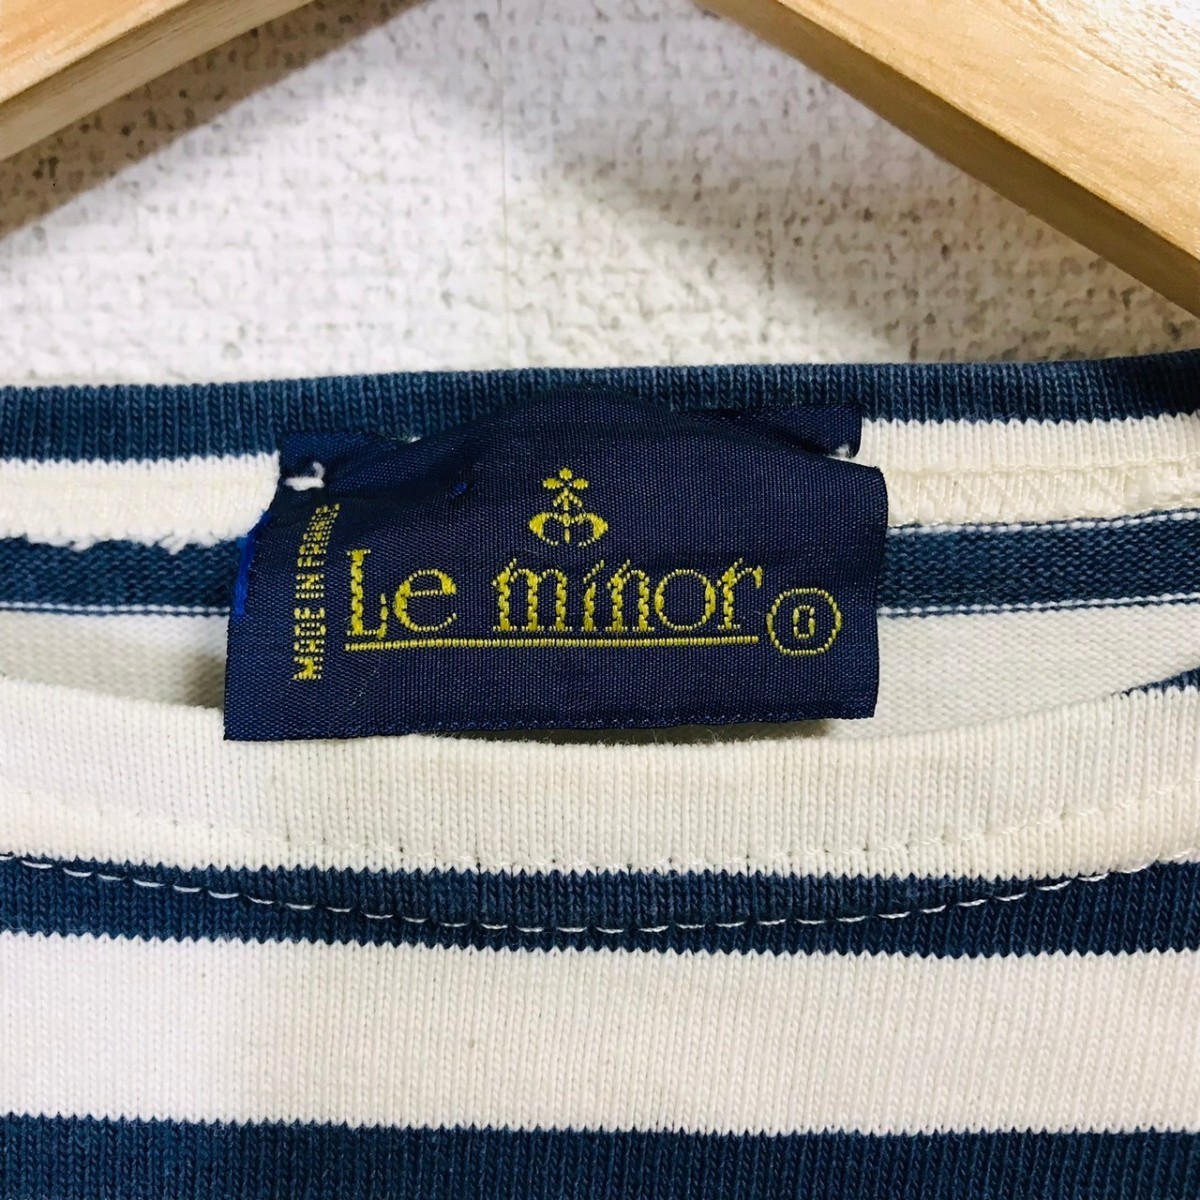 H6800dL フランス製 Le Minor ルミノア サイズ0 (S位) バスクシャツ 長袖Tシャツ ロンT ボーダー柄 カットソー ホワイト×ネイビー 綿100%_画像6